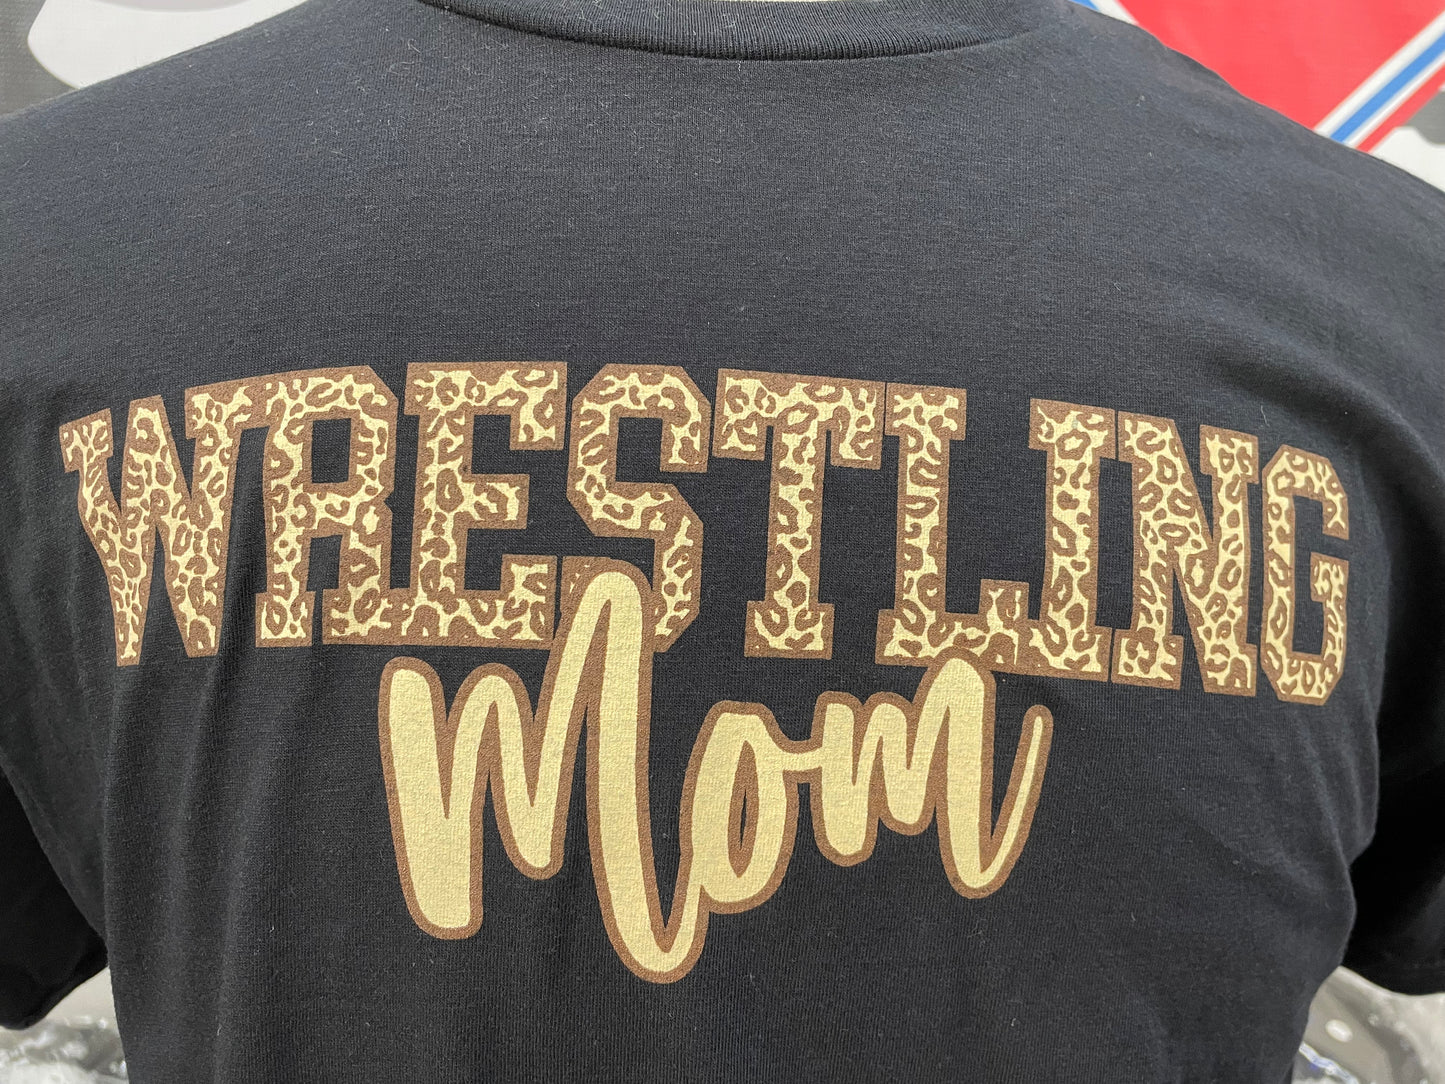 Wrestling mom t-shirt